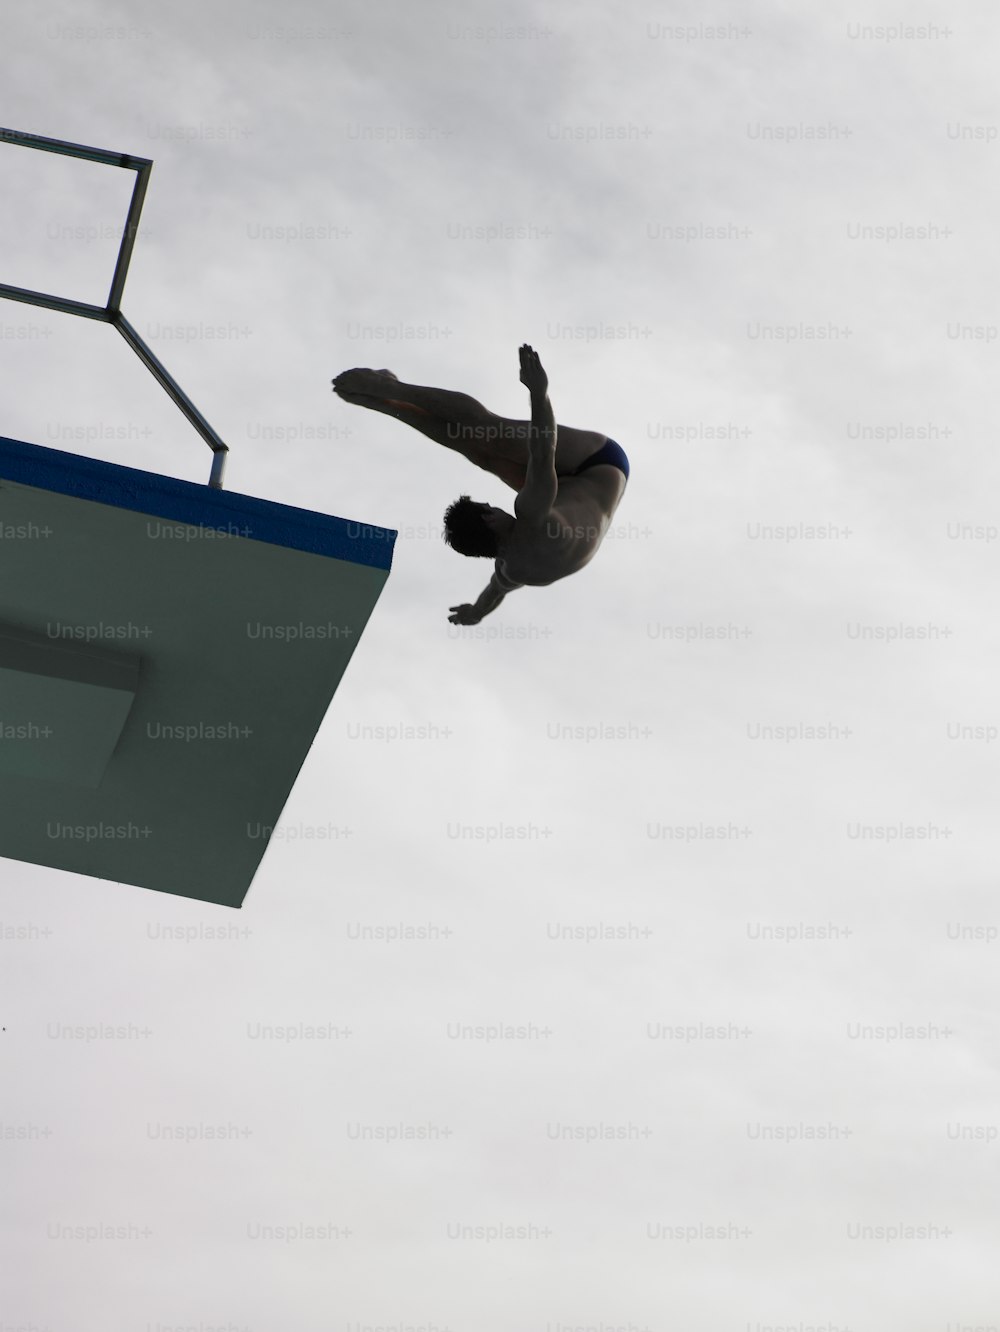 Un homme volant dans les airs en faisant de la planche à roulettes